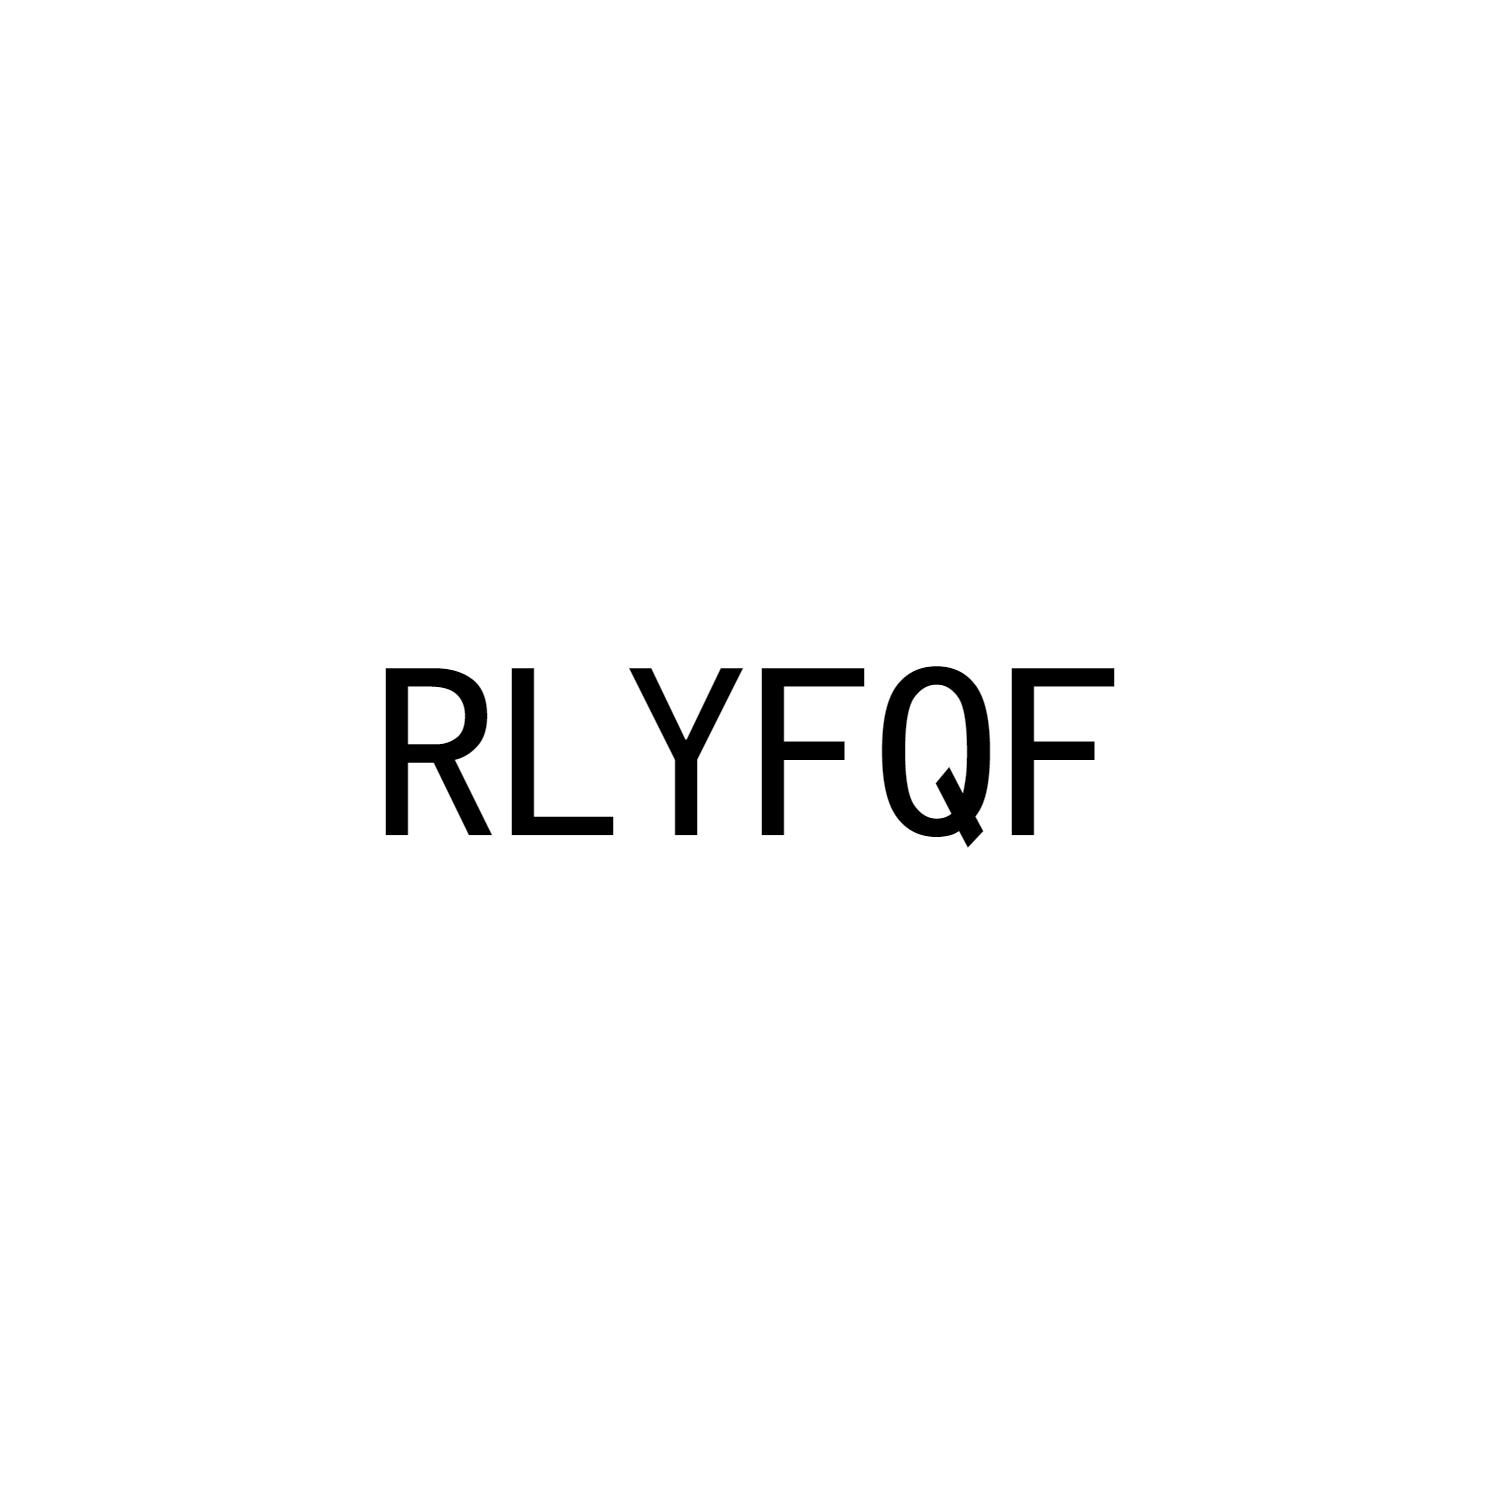 RLYFQF